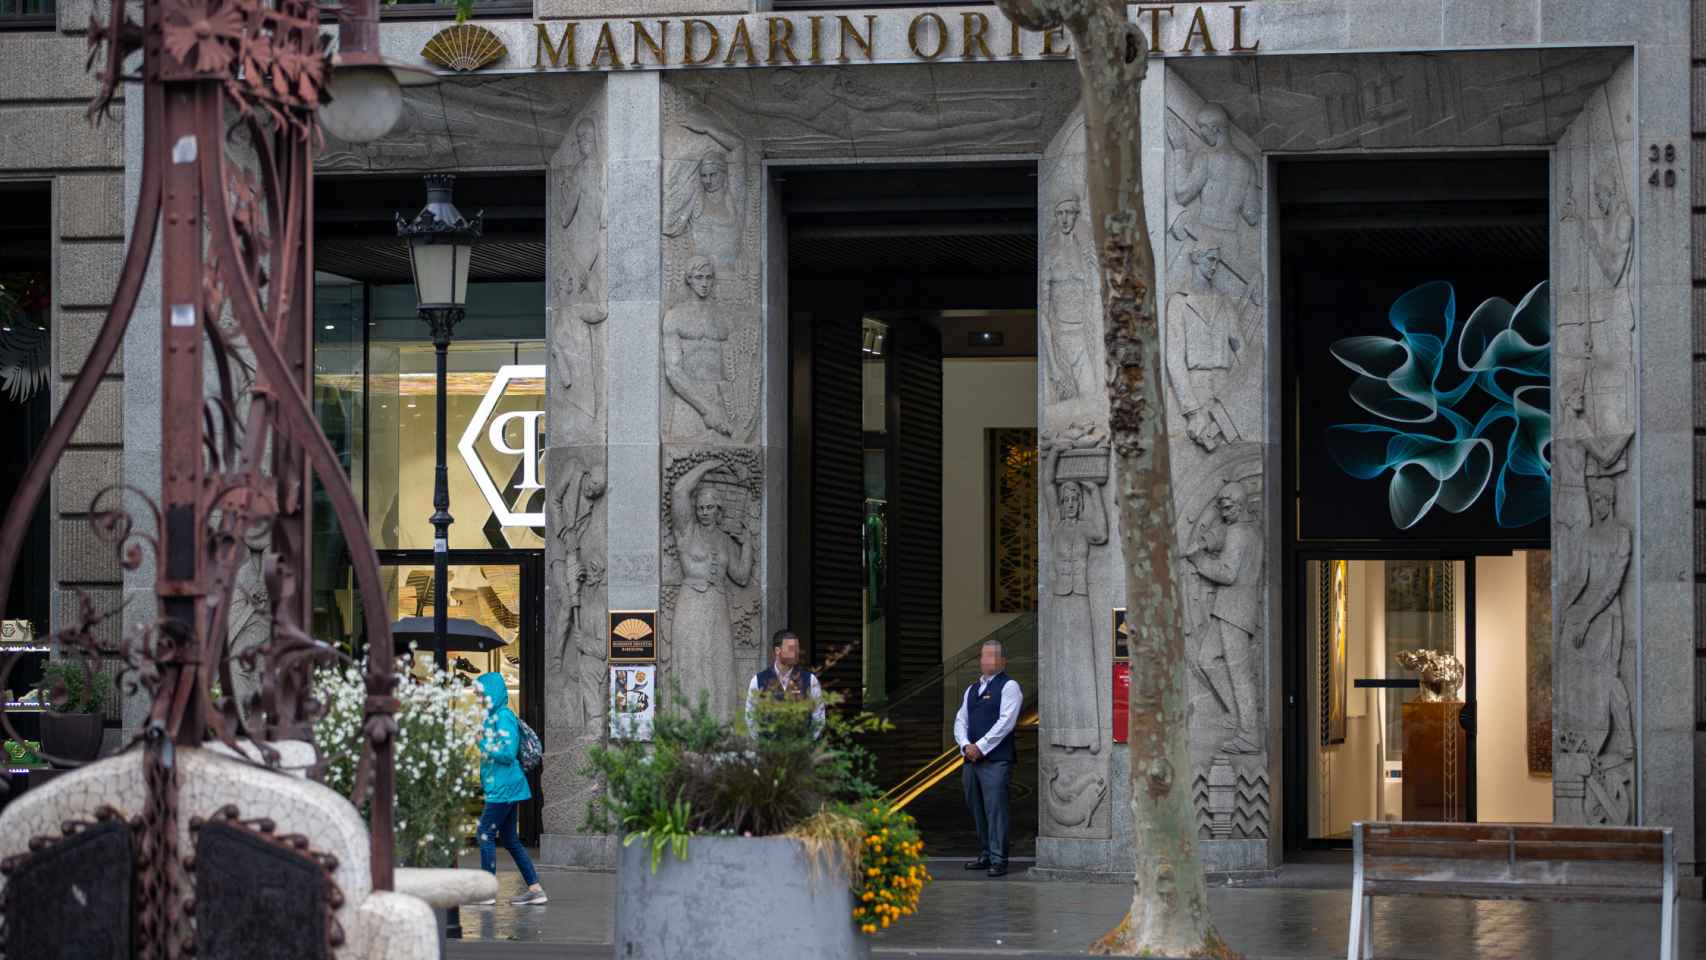 Seguridad del hotel Mandarín de Paseo de Gracia de Barcelona